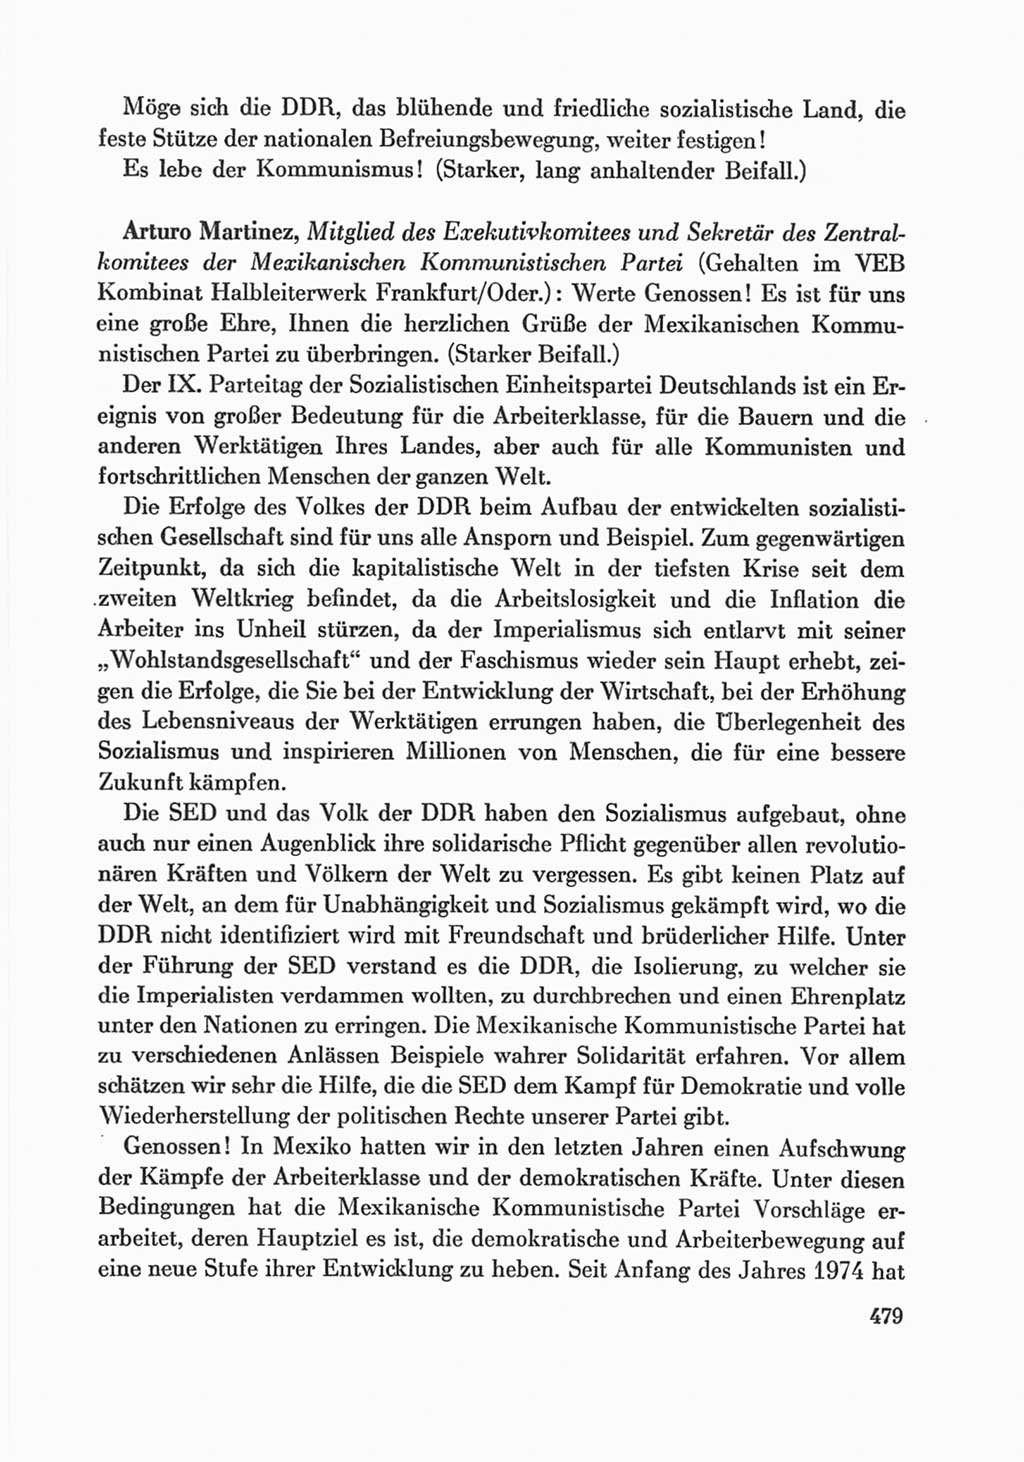 Protokoll der Verhandlungen des Ⅸ. Parteitages der Sozialistischen Einheitspartei Deutschlands (SED) [Deutsche Demokratische Republik (DDR)] 1976, Band 1, Seite 479 (Prot. Verh. Ⅸ. PT SED DDR 1976, Bd. 1, S. 479)